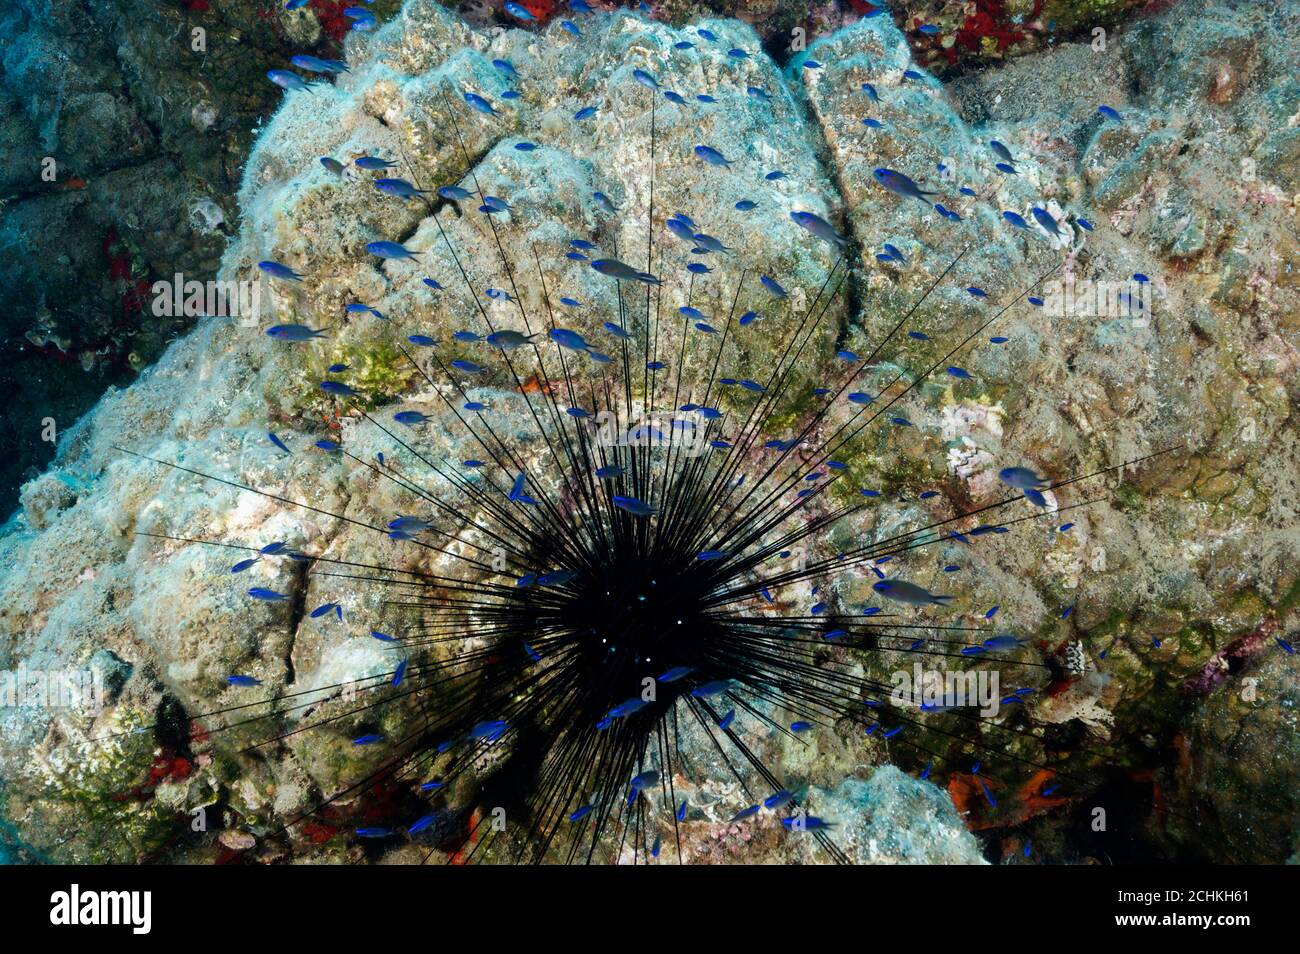 Invasive Arten von langen Wirbelsäule Seeigel, Diadema setosum, mit juvenilen Chromis chromis Fische Schutz Gokova Bay Türkei Stockfoto